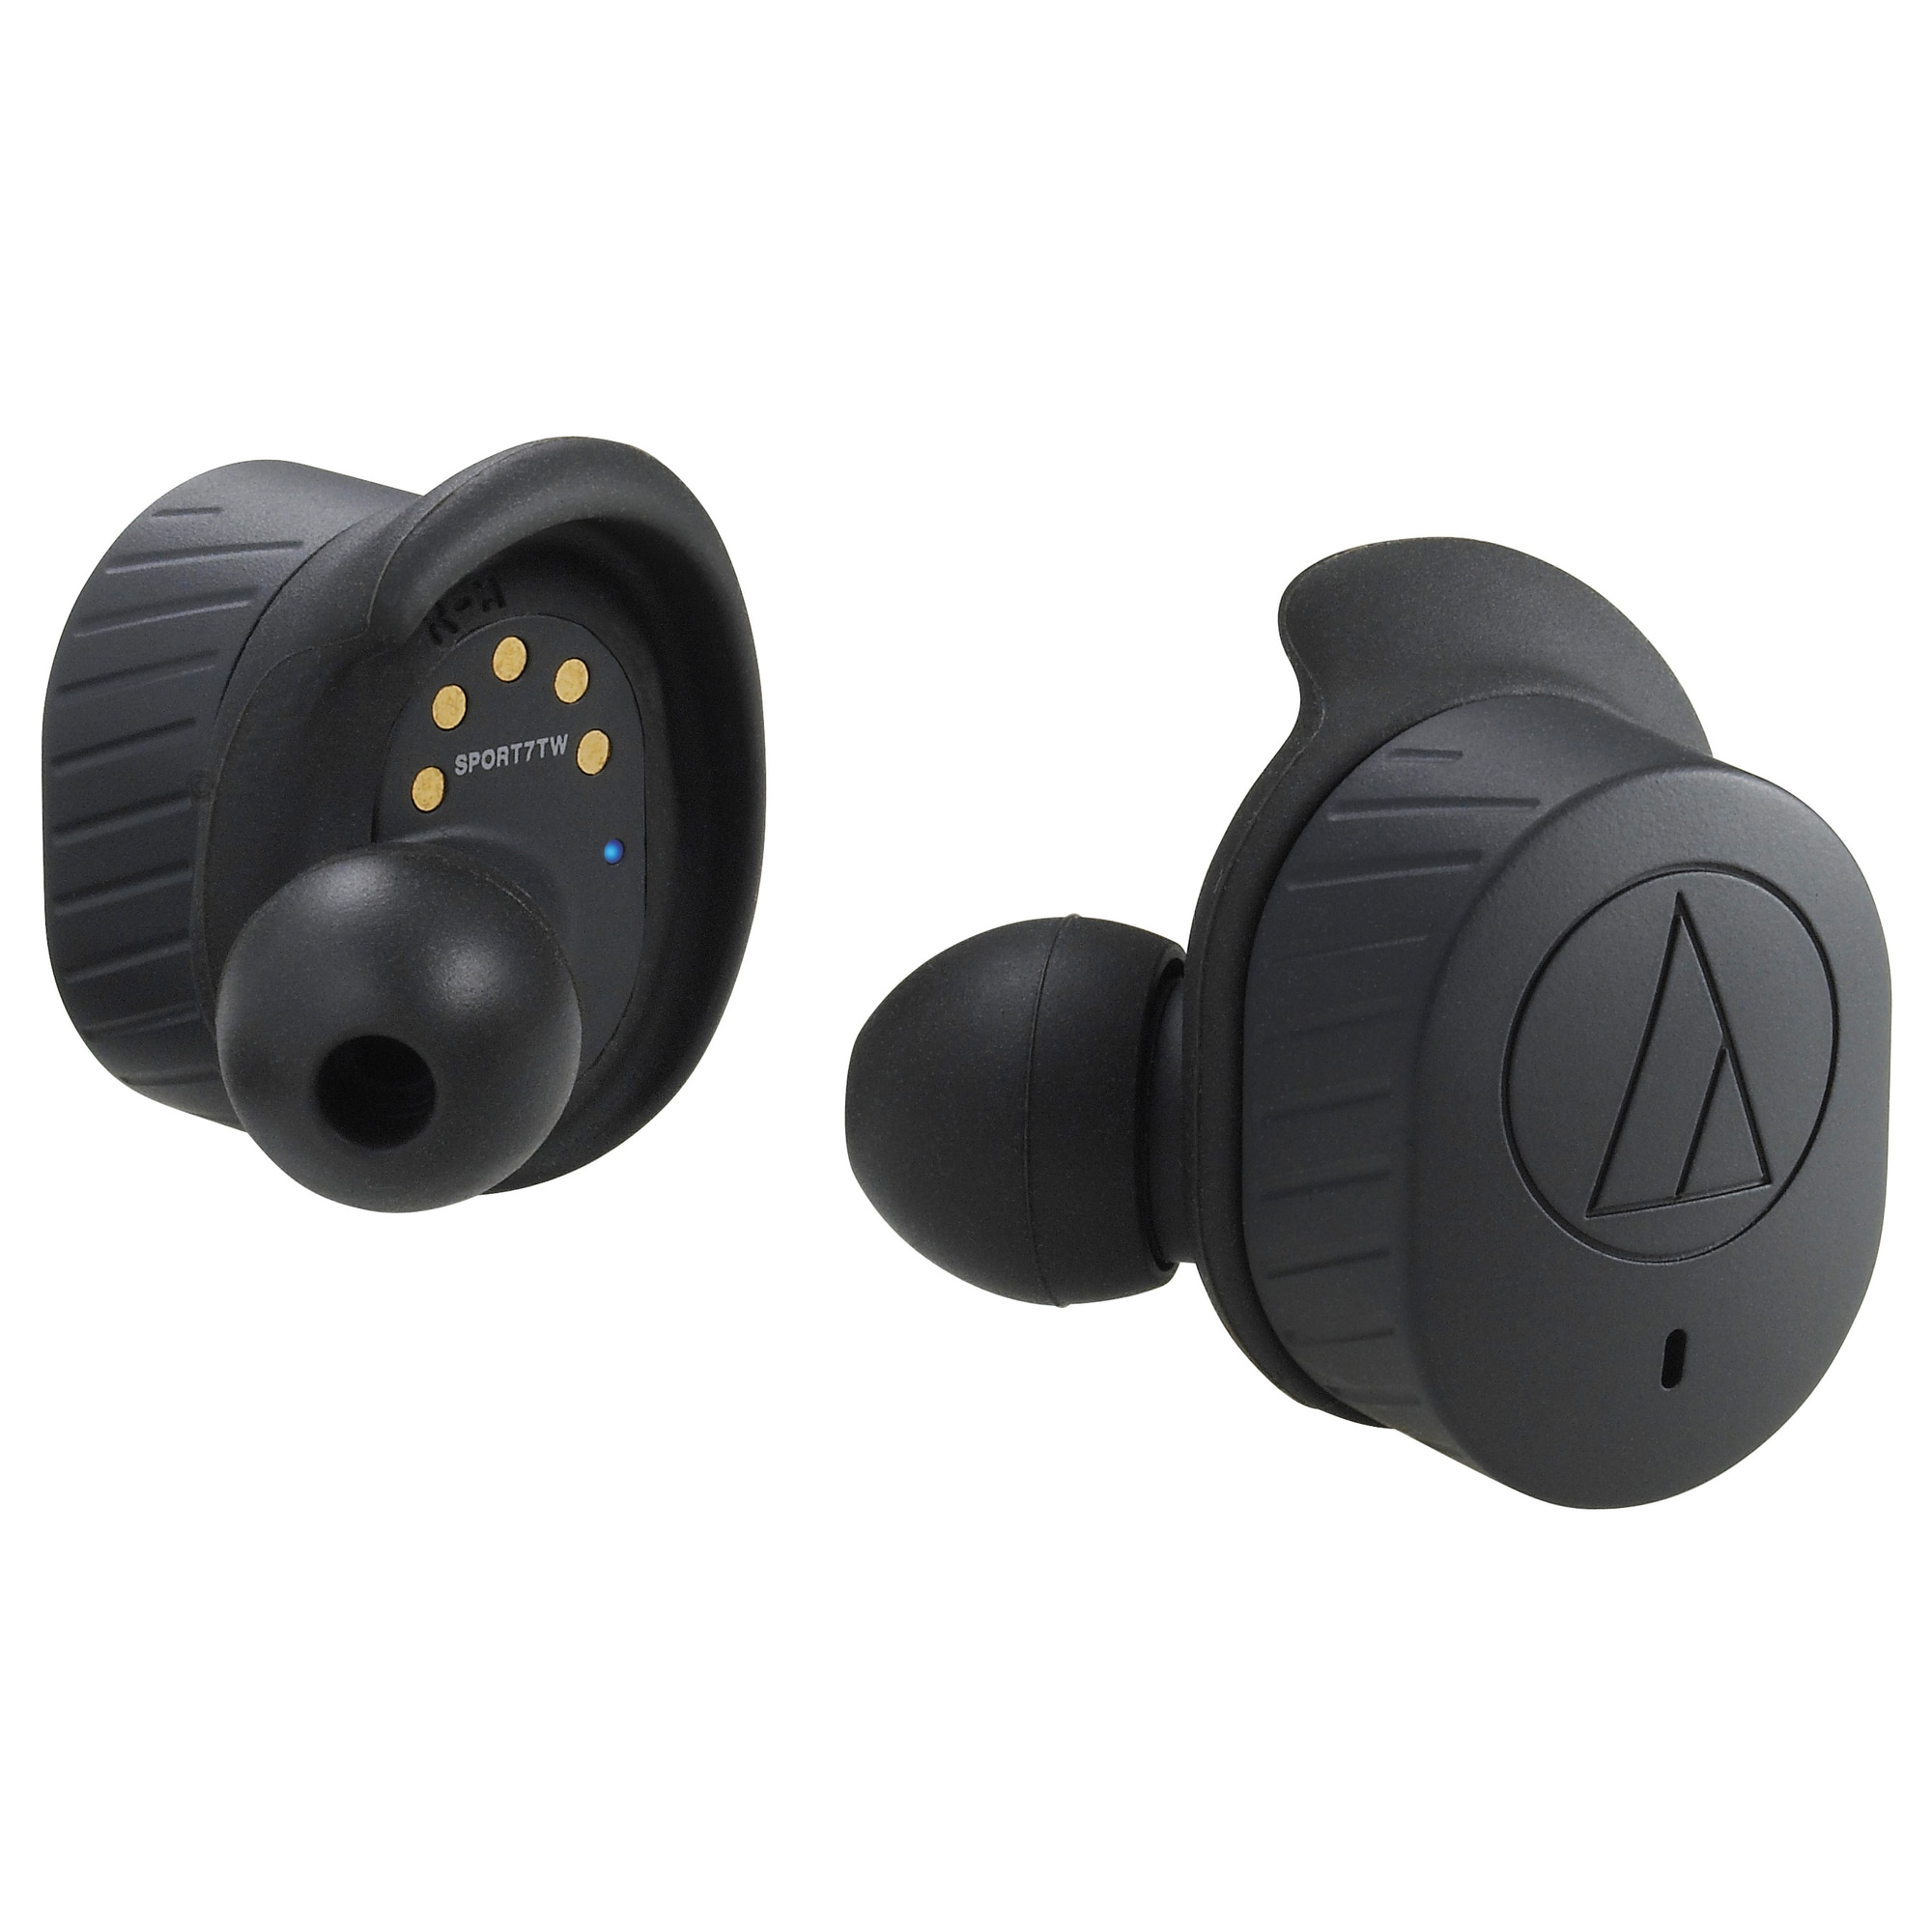 Audio-Technica ATH-SPORT7TW langattomat in-ear kuulokkeet (musta) -  Gigantti verkkokauppa